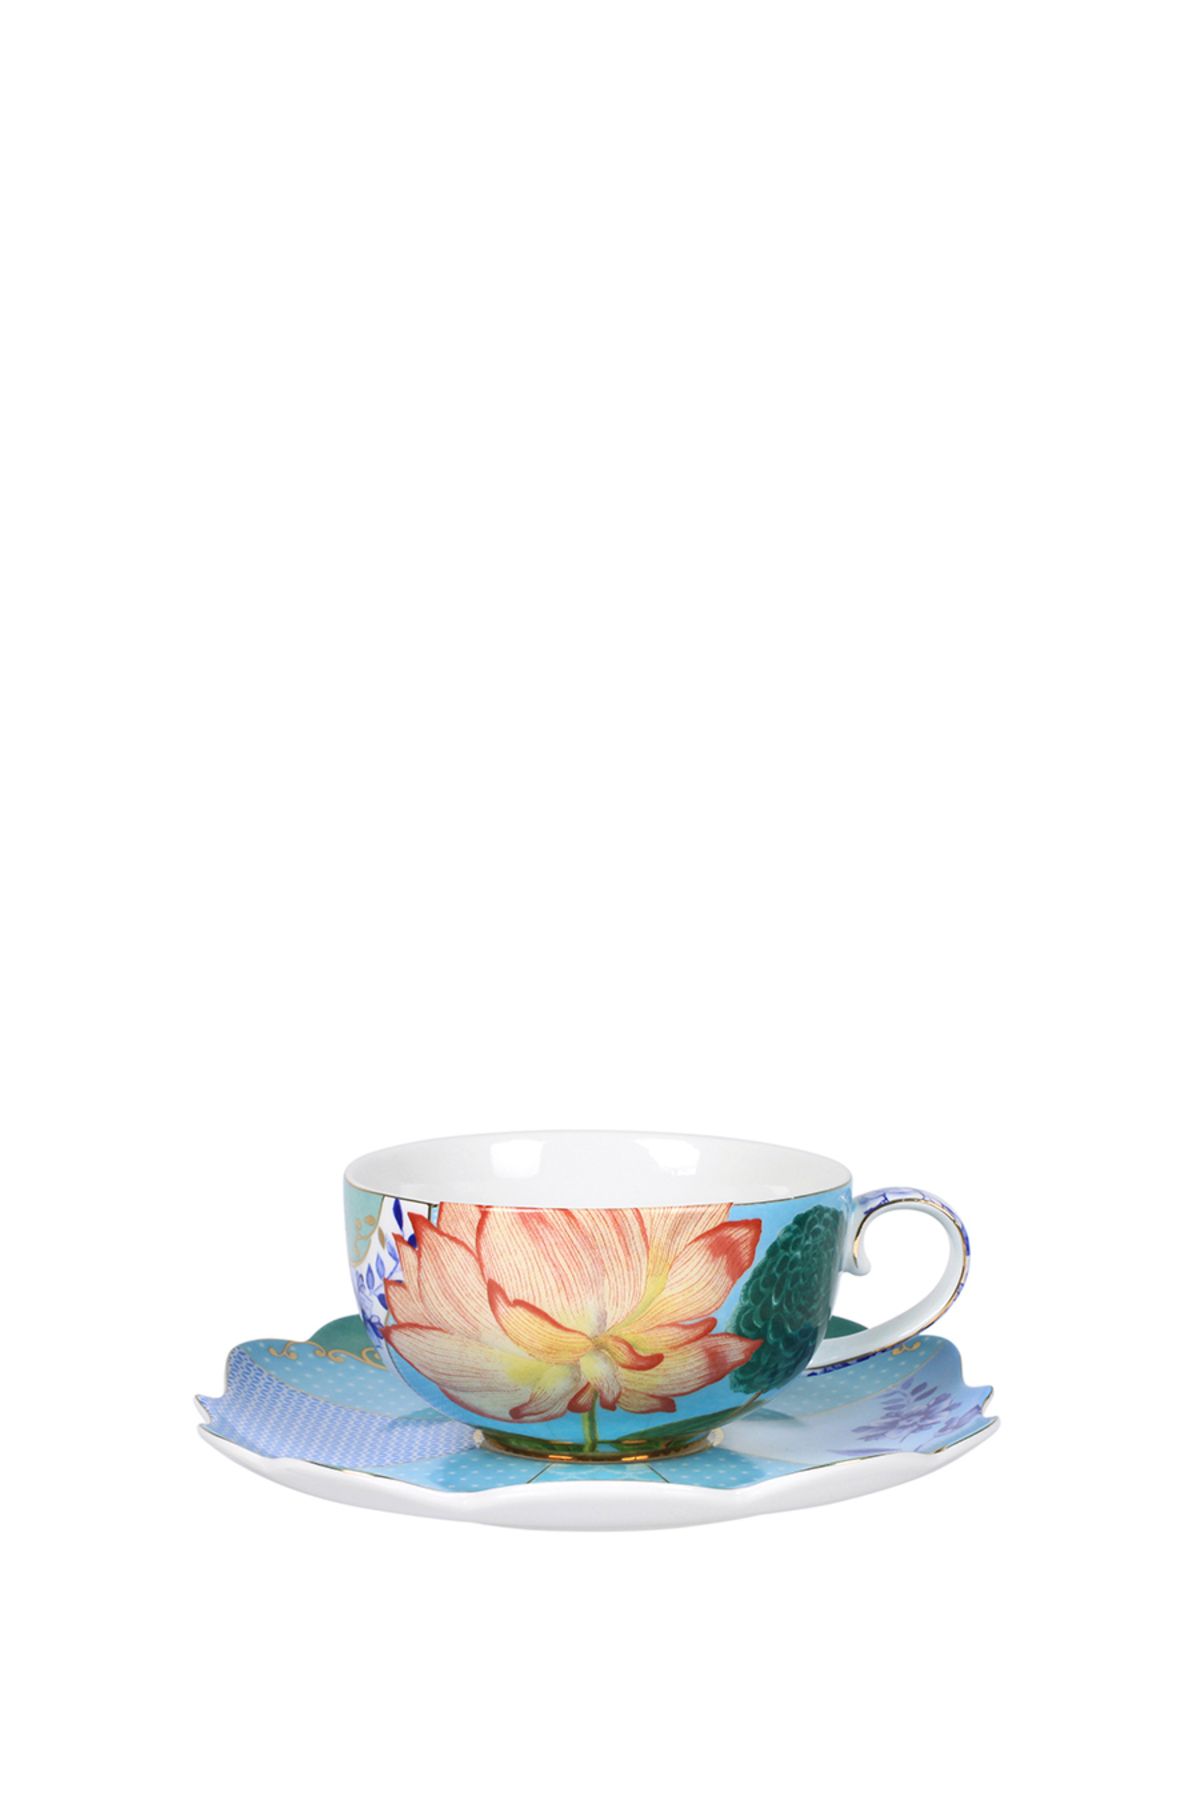 Pip Studio Royal Çiçek Desenli Porselen Çay Fincanı